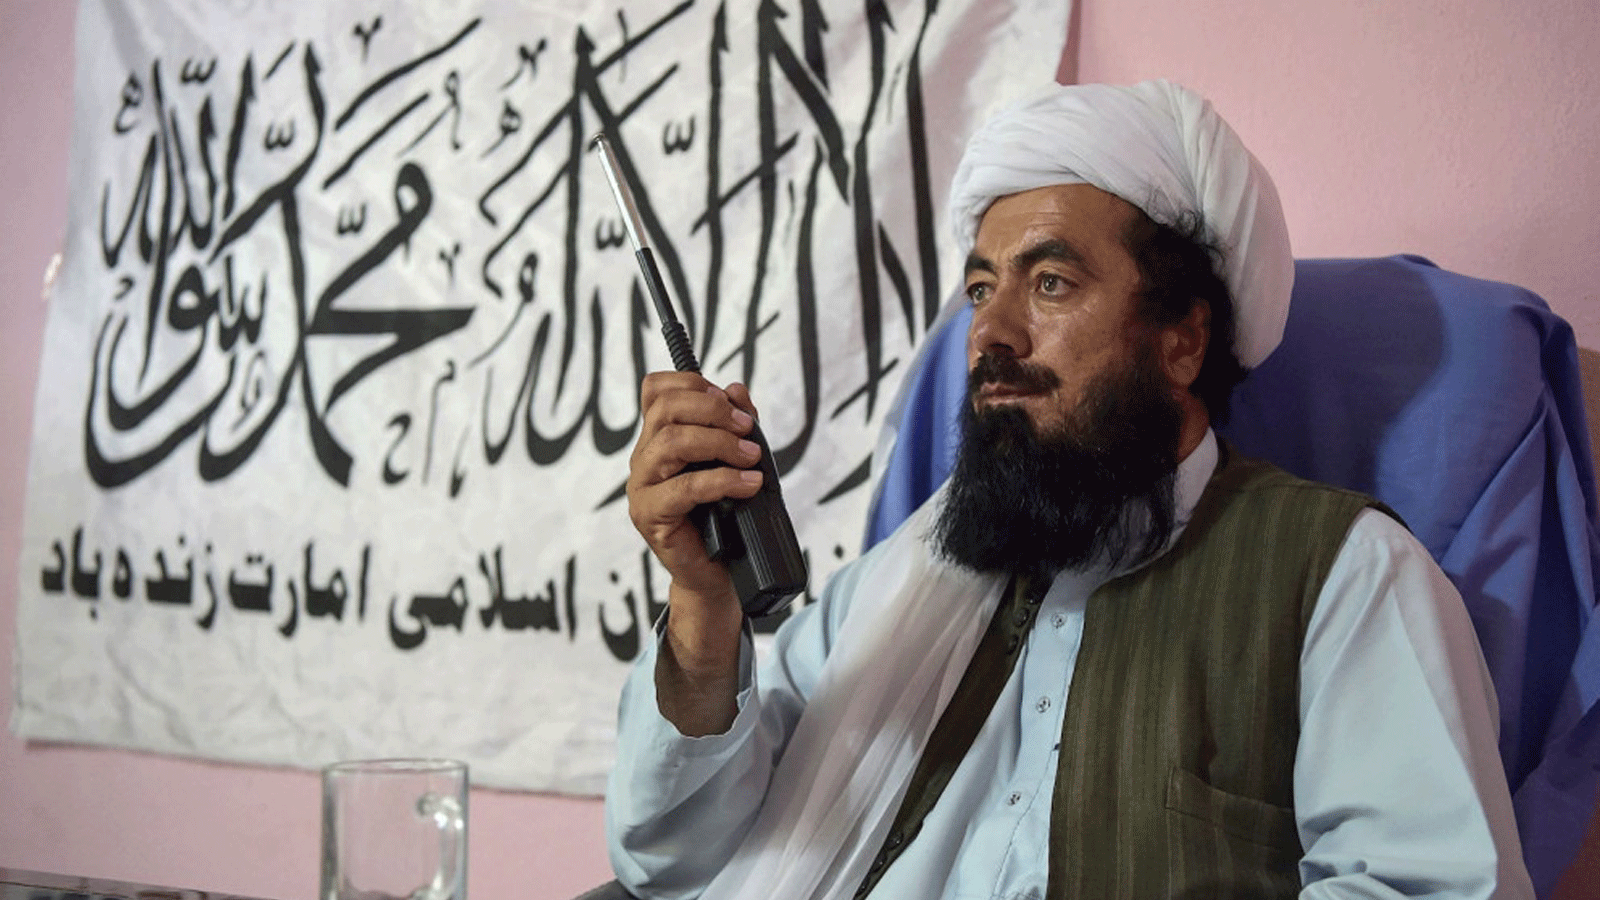 قائد طالبان الملا مصباح ومدير الصحة العامة لغزنة من الجانب الذي تسيطر عليه طالبان، في مستشفى في منطقة أندار في ولاية غزنة/ أفغانستان. 3 حزيران/يونيو 2021